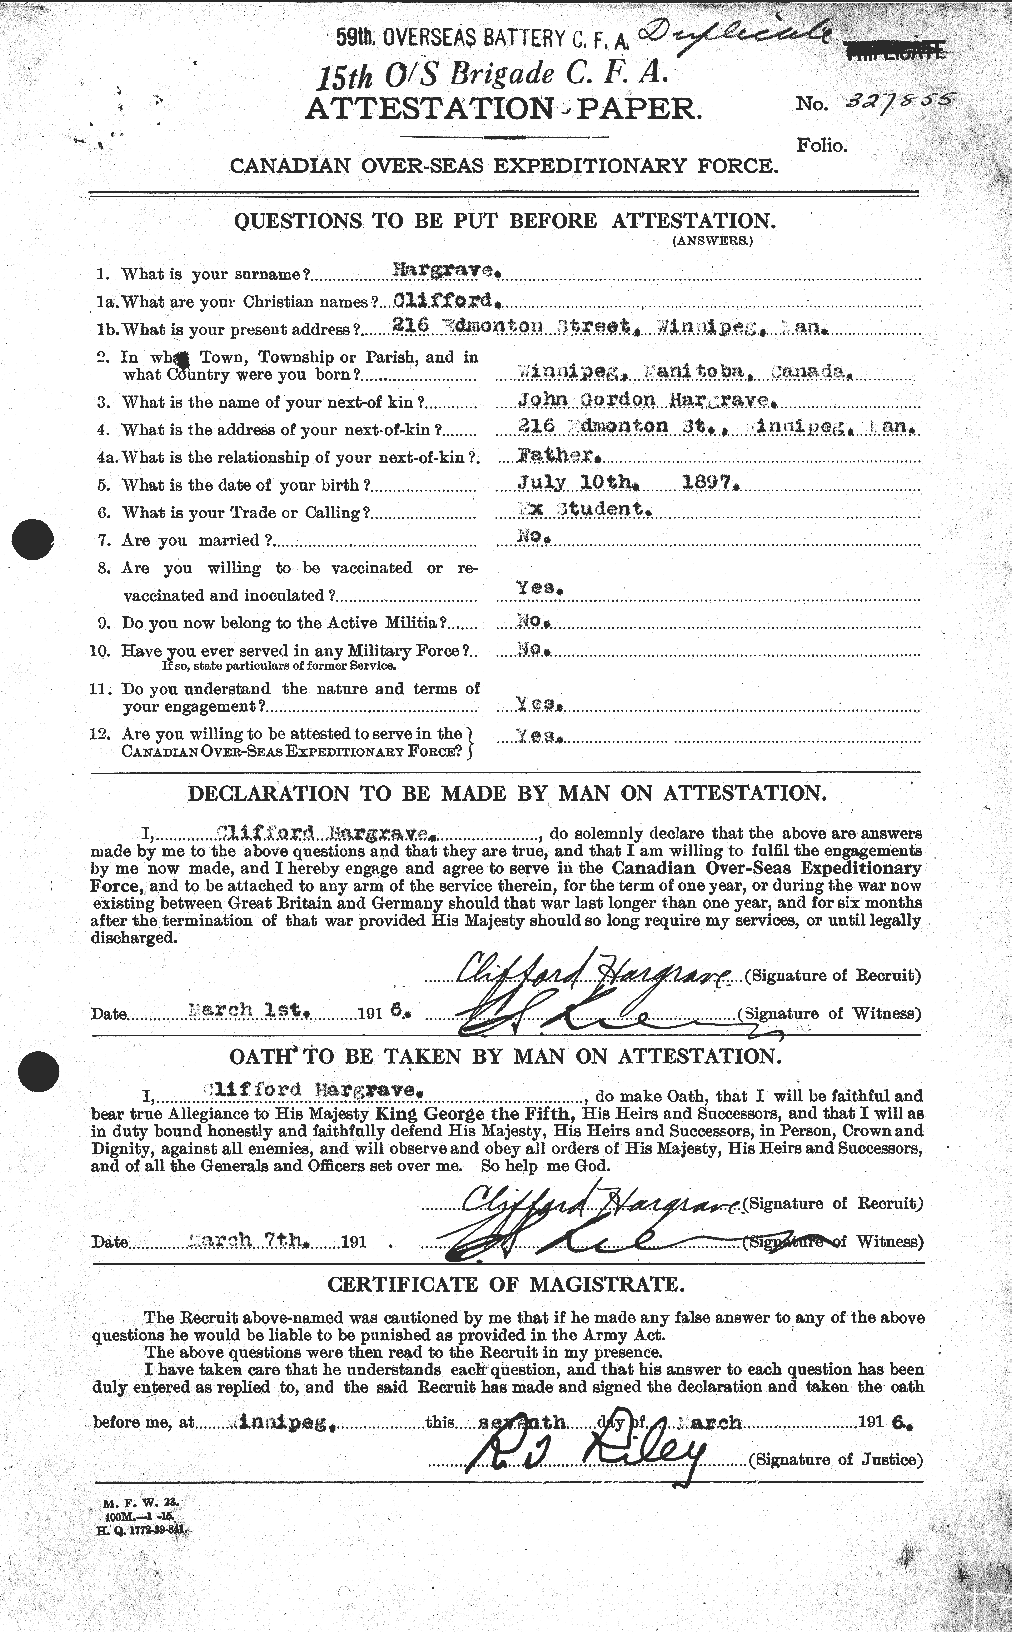 Dossiers du Personnel de la Première Guerre mondiale - CEC 378029a